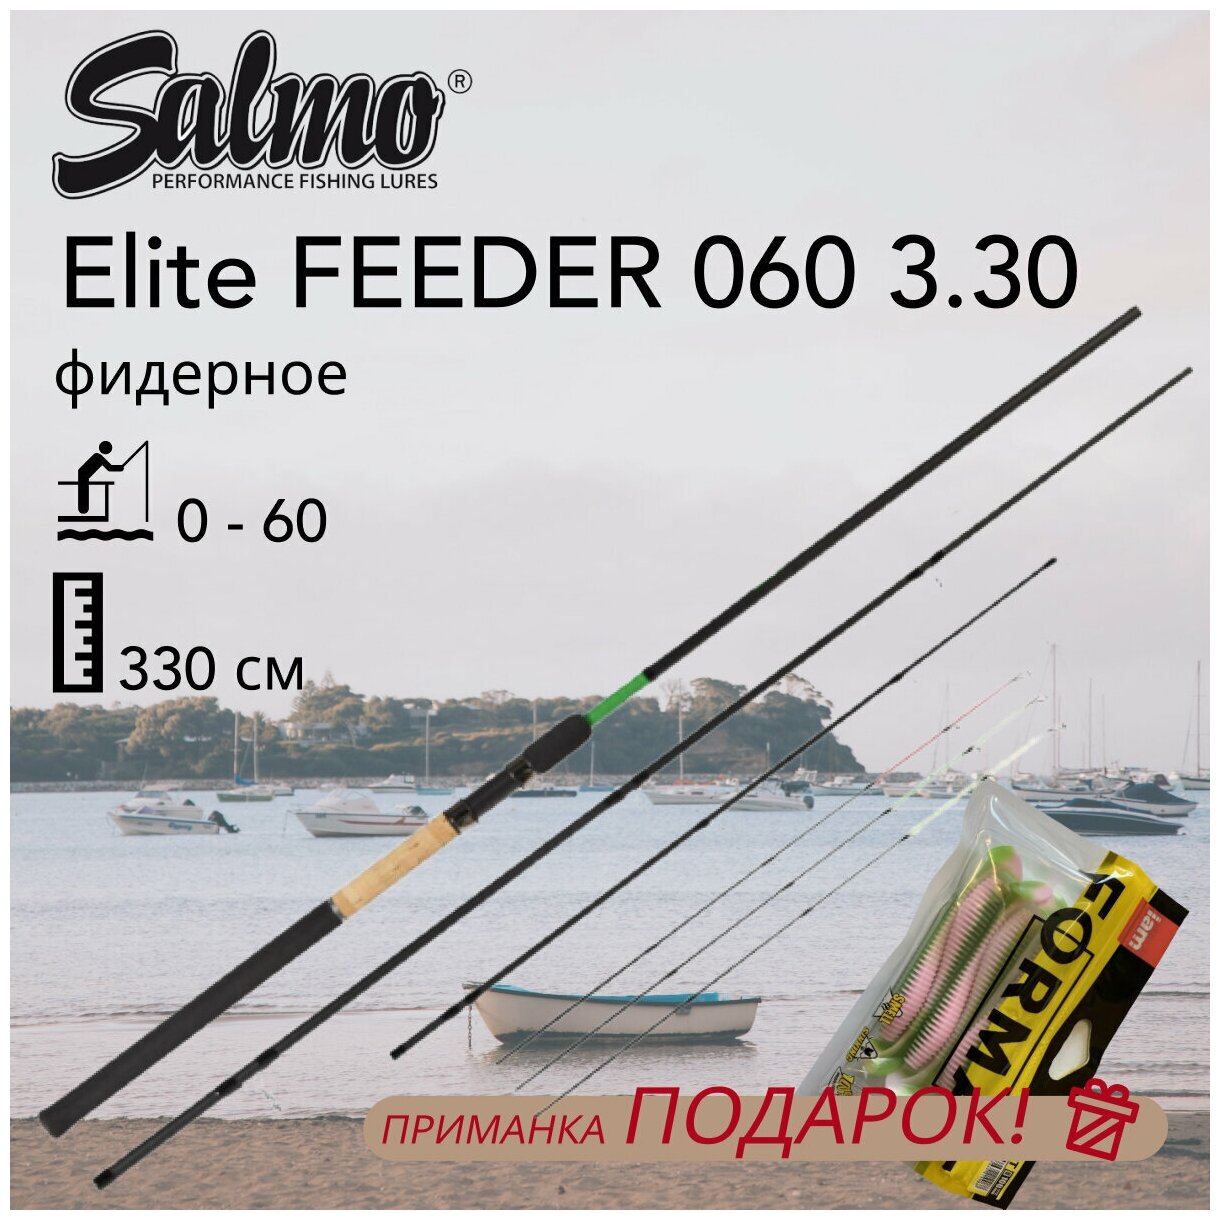 Удилище фидерное Salmo Elite FEEDER 060 3.30